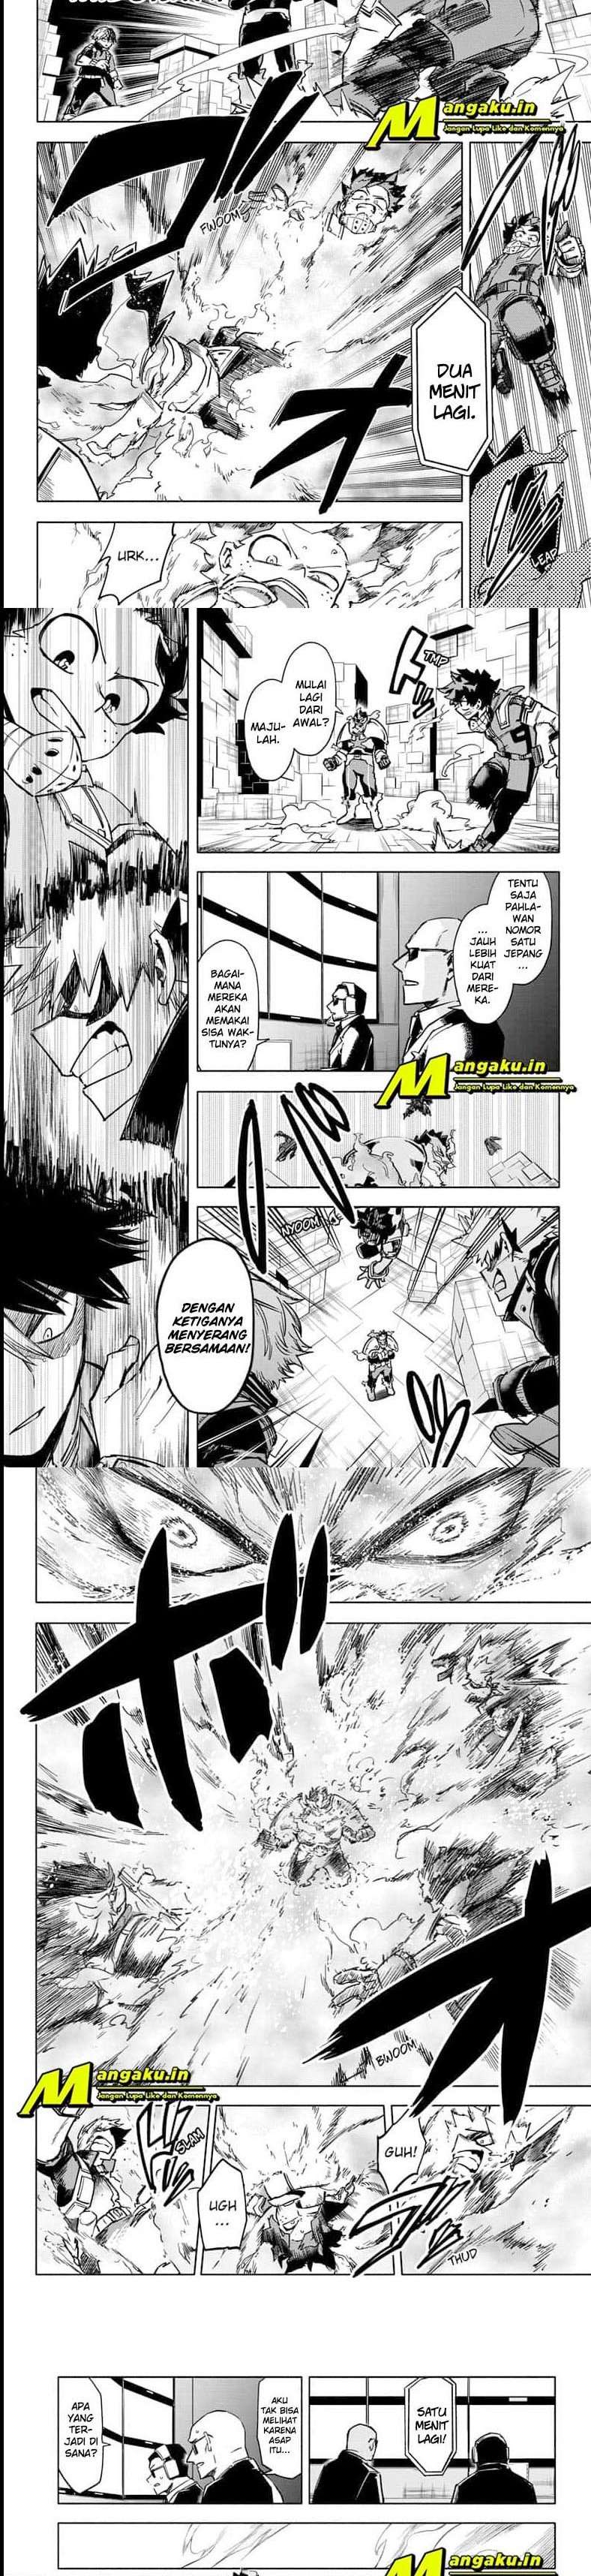 Boku no Hero Academia Chapter 321.5